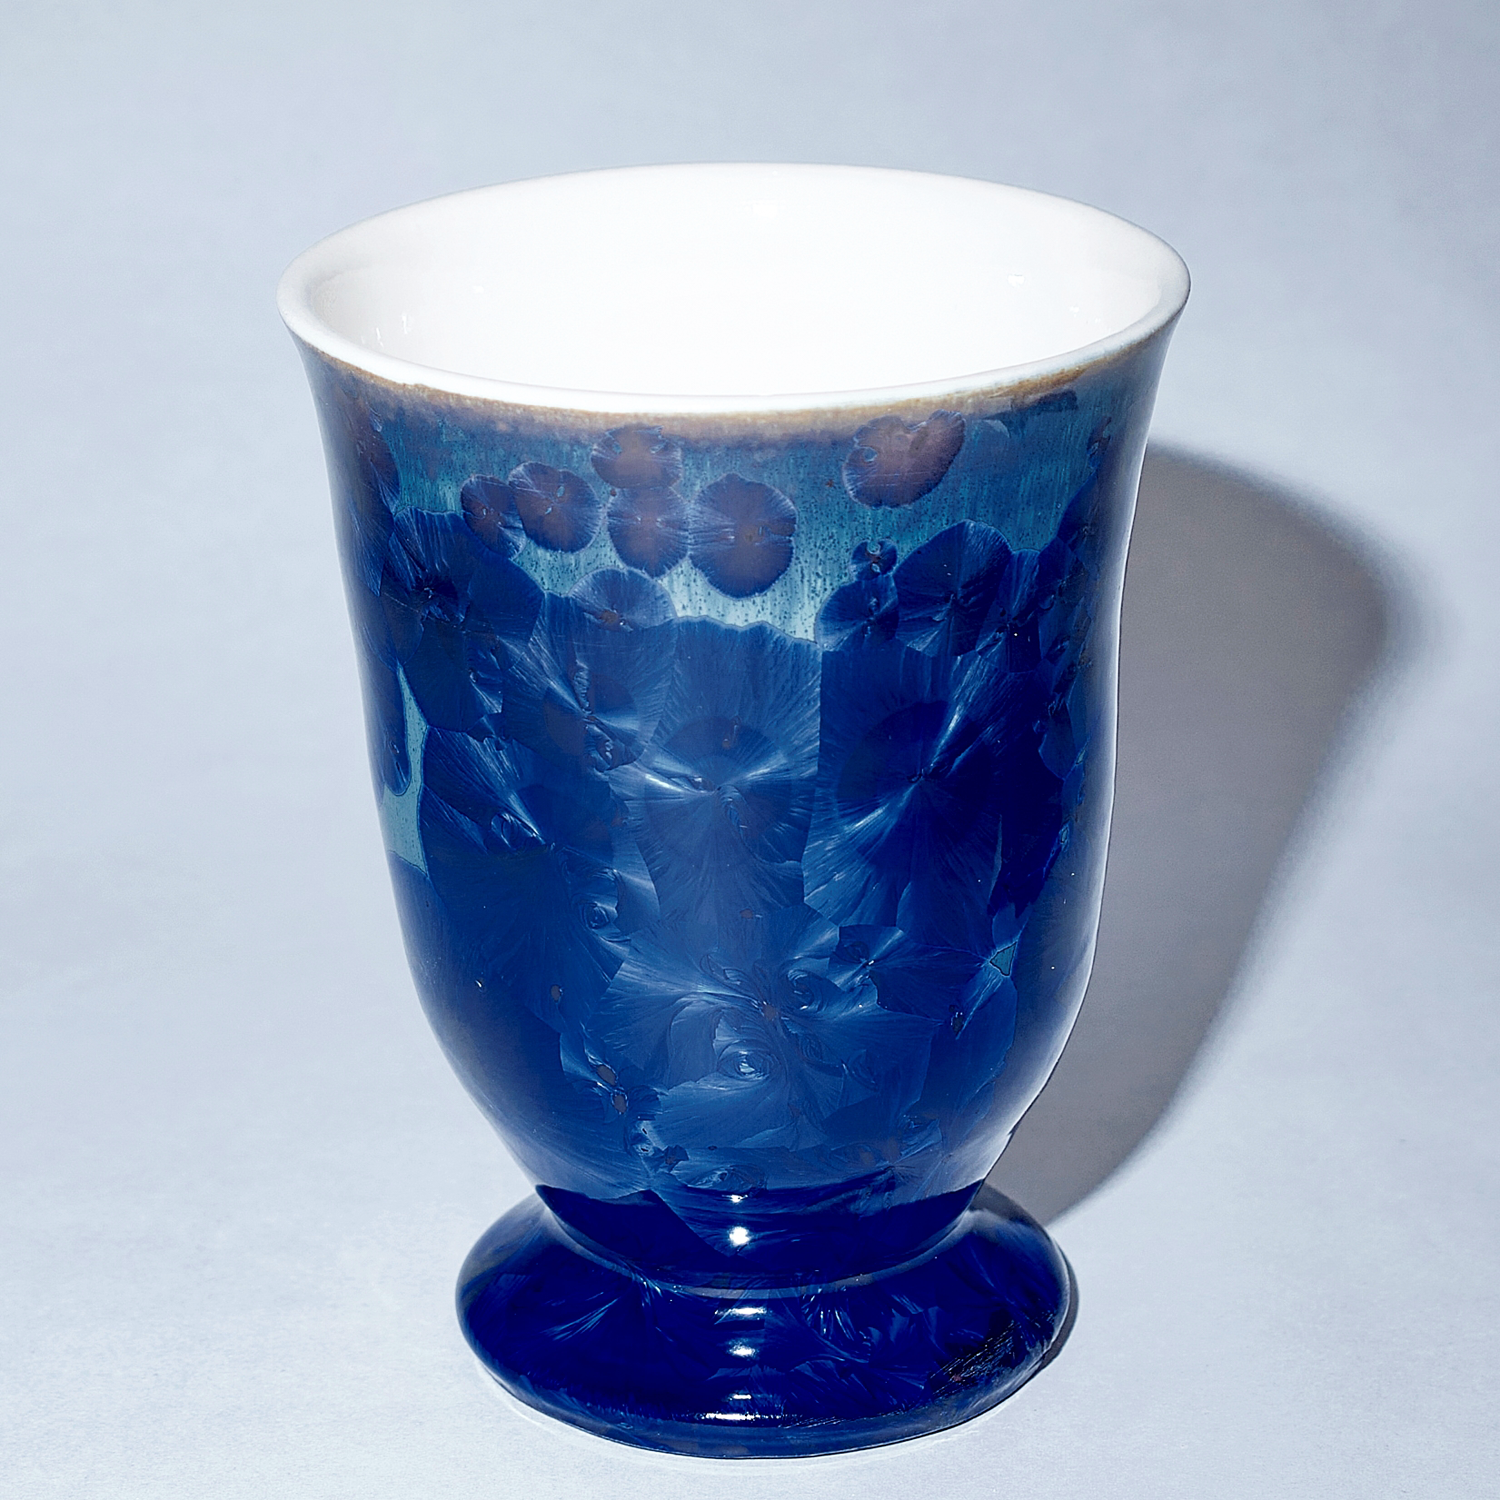 Yumiko Katsuya: Blue Goblet Vase Product Image 1 of 1